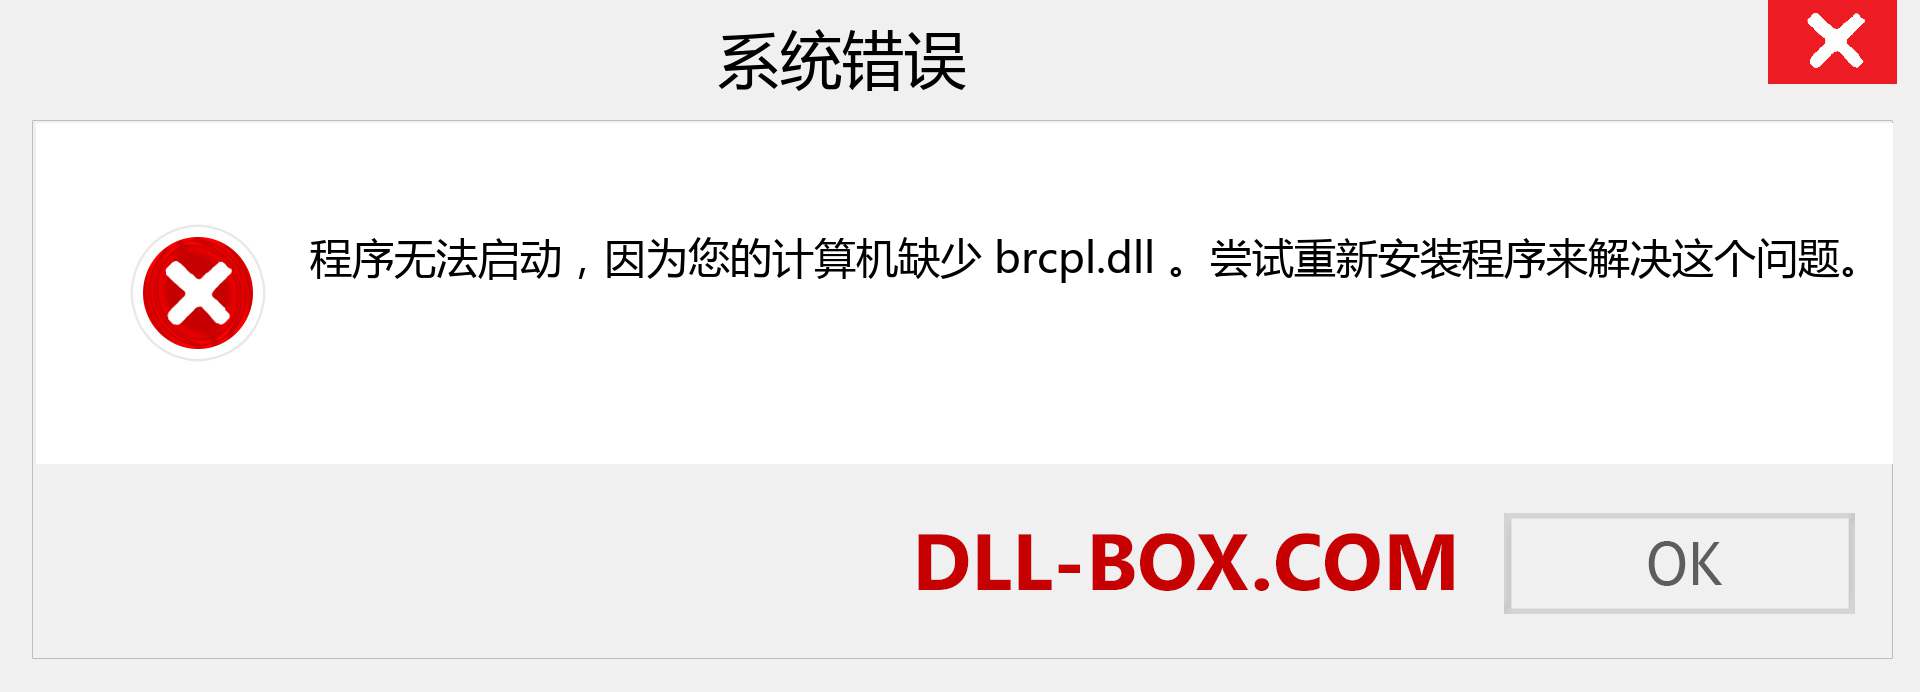 brcpl.dll 文件丢失？。 适用于 Windows 7、8、10 的下载 - 修复 Windows、照片、图像上的 brcpl dll 丢失错误